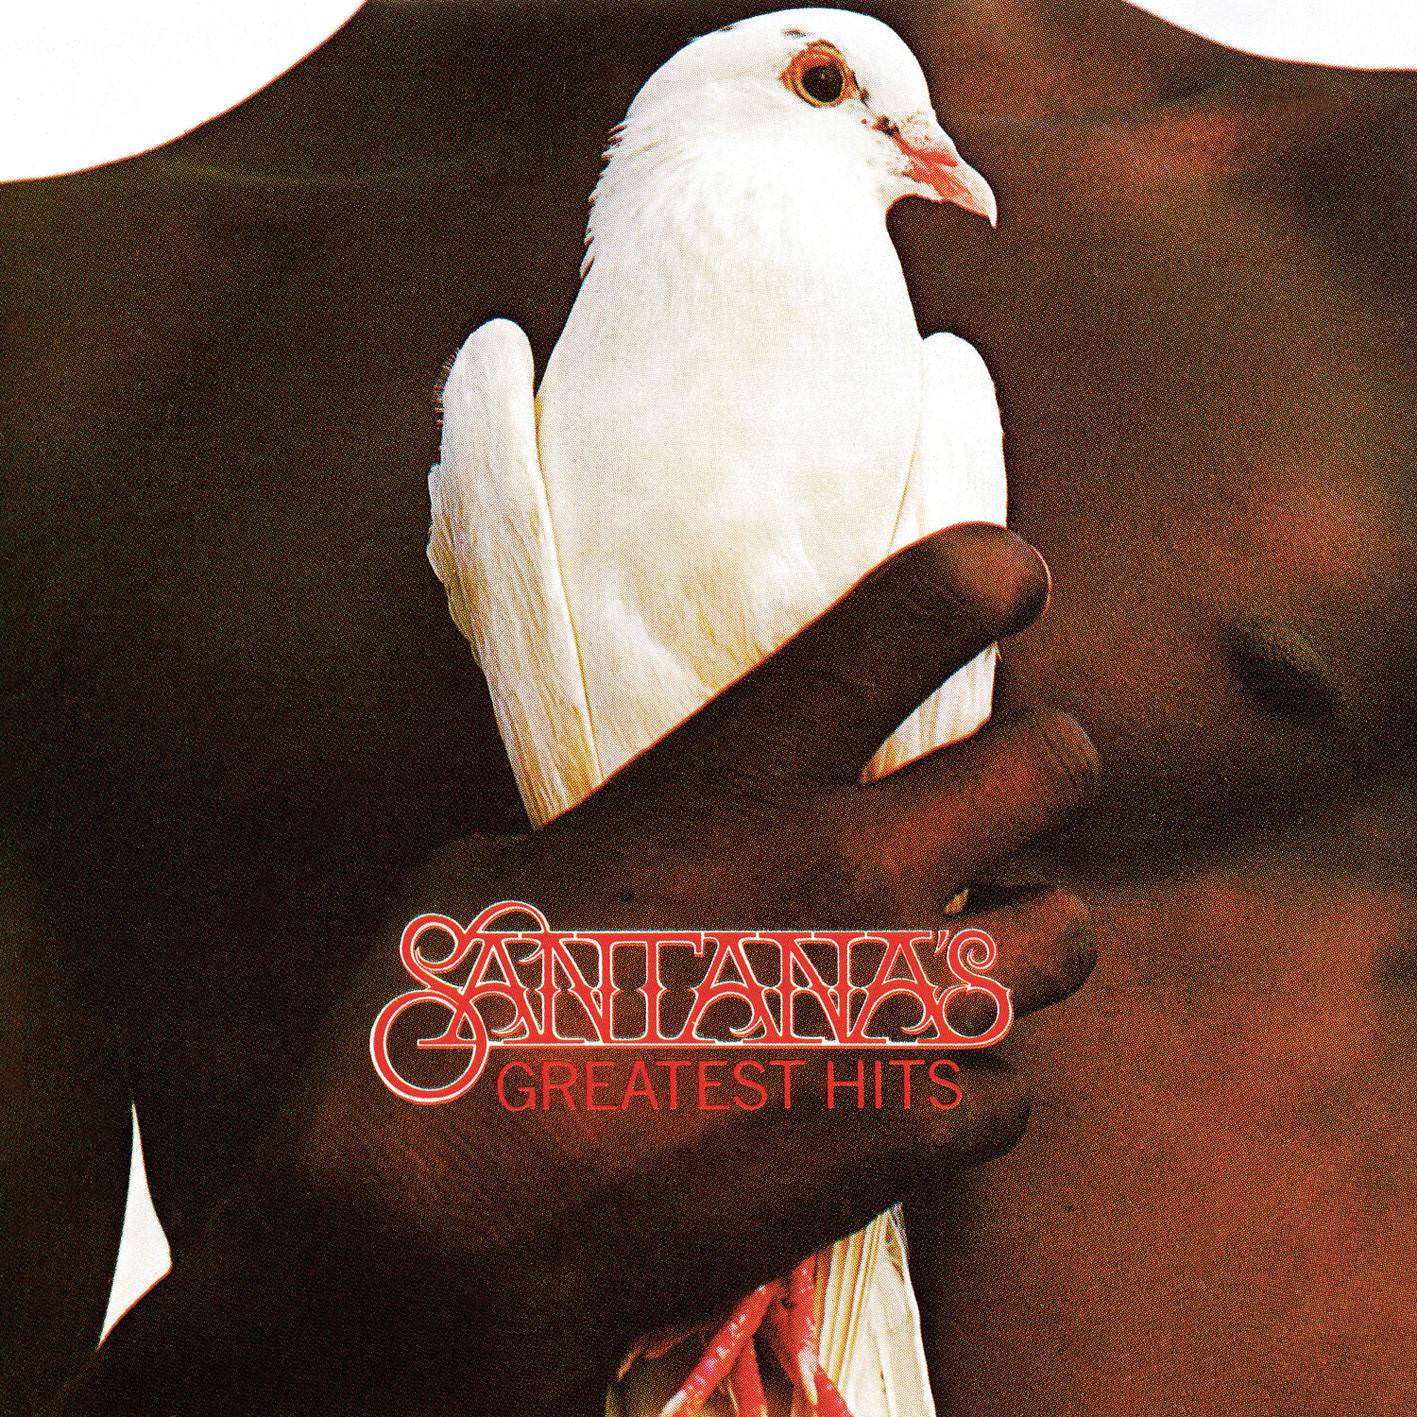 Santana - Santana’s Greatest Hits (1974/2014) [HDTracks FLAC 24bit/192kHz]